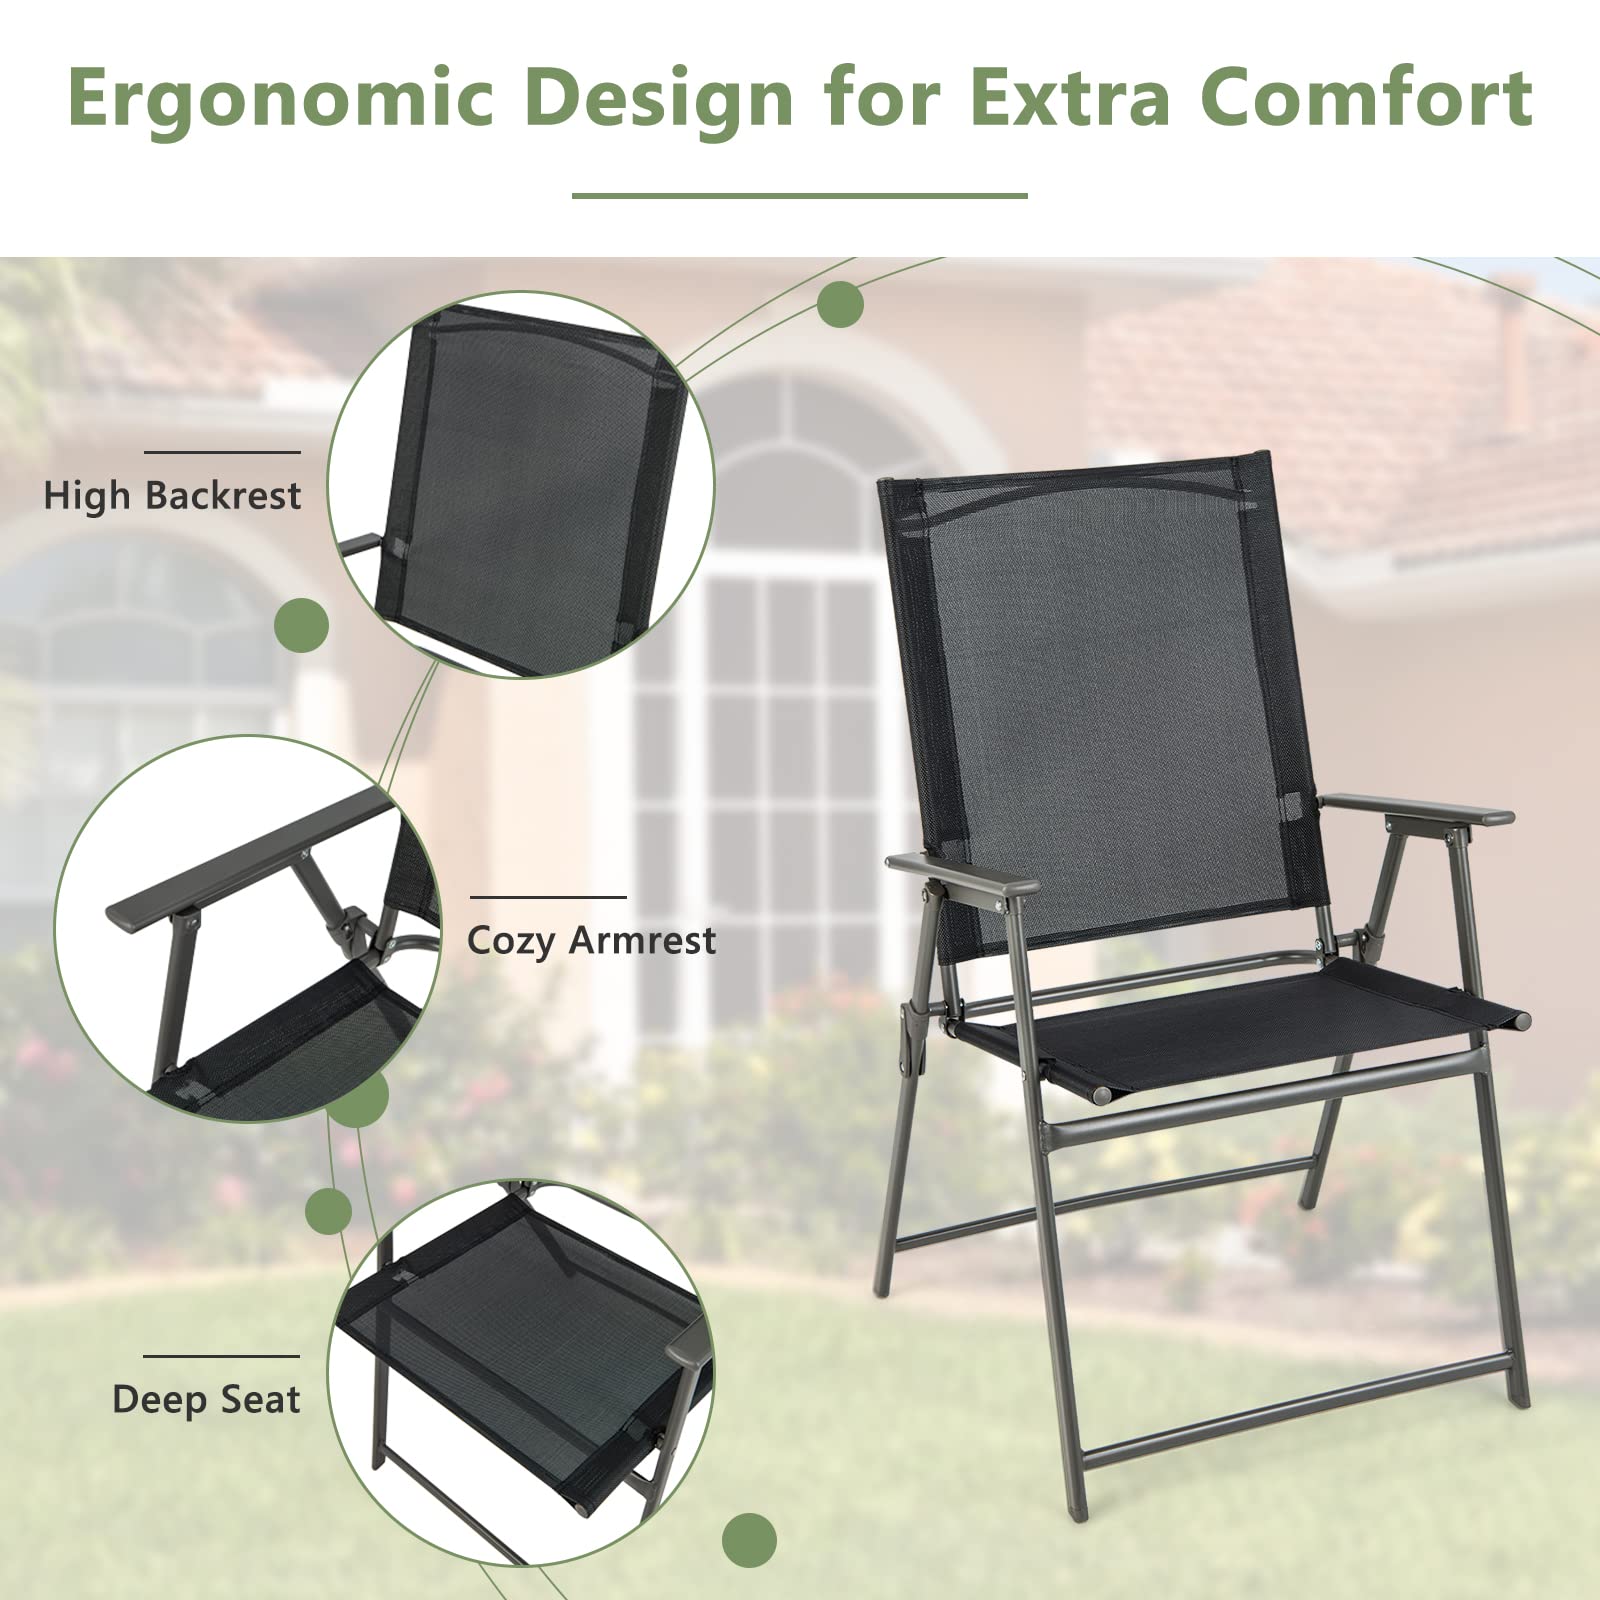 Patio Folding Chairs Set - Giantex